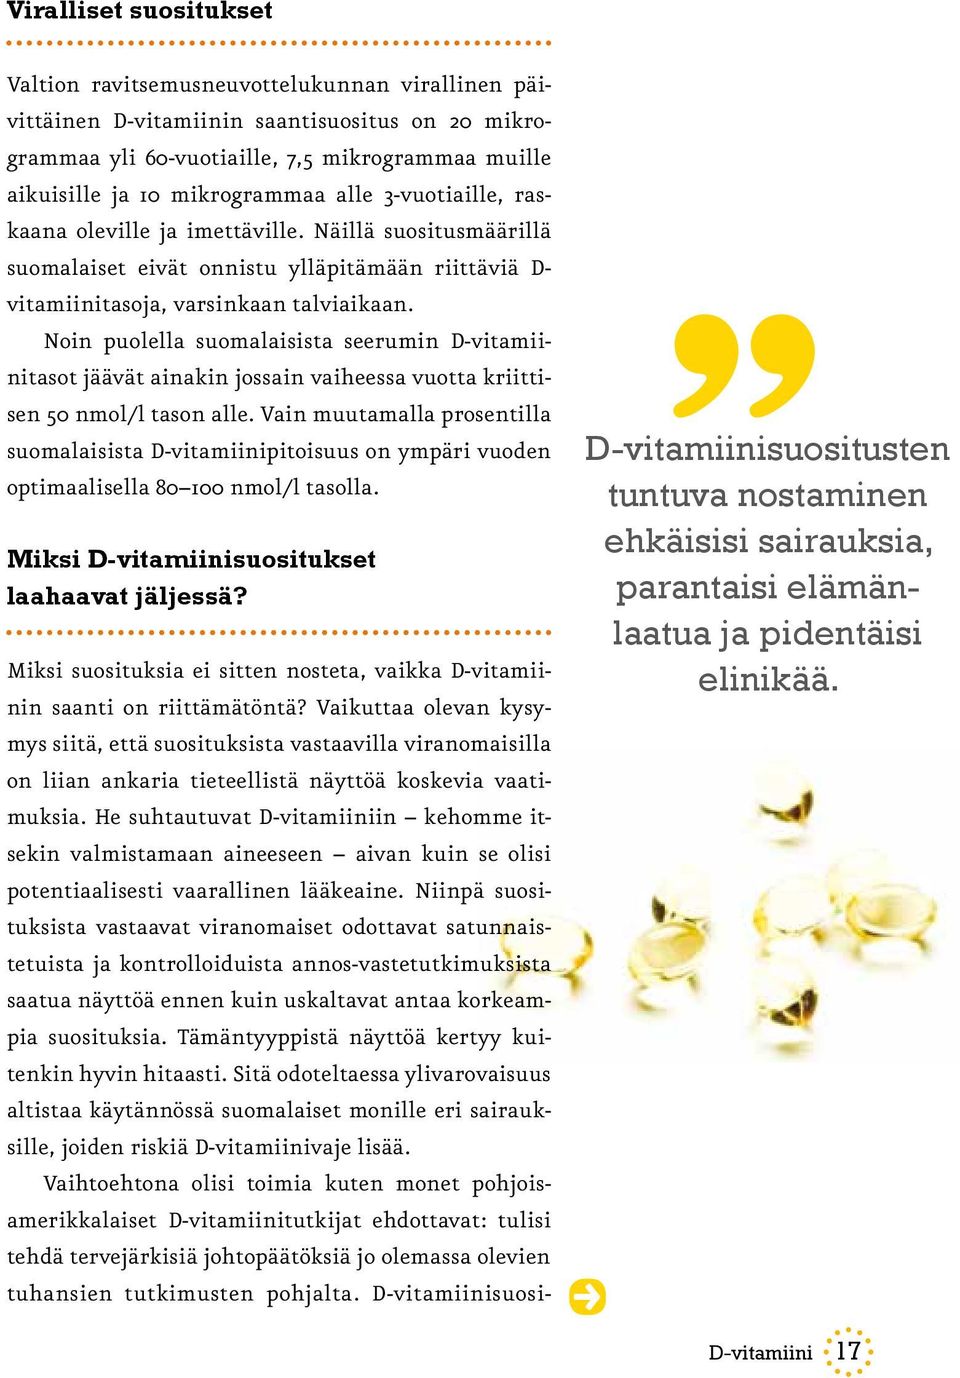 Noin puolella suomalaisista seerumin D-vitamiinitasot jäävät ainakin jossain vaiheessa vuotta kriittisen 50 nmol/l tason alle.